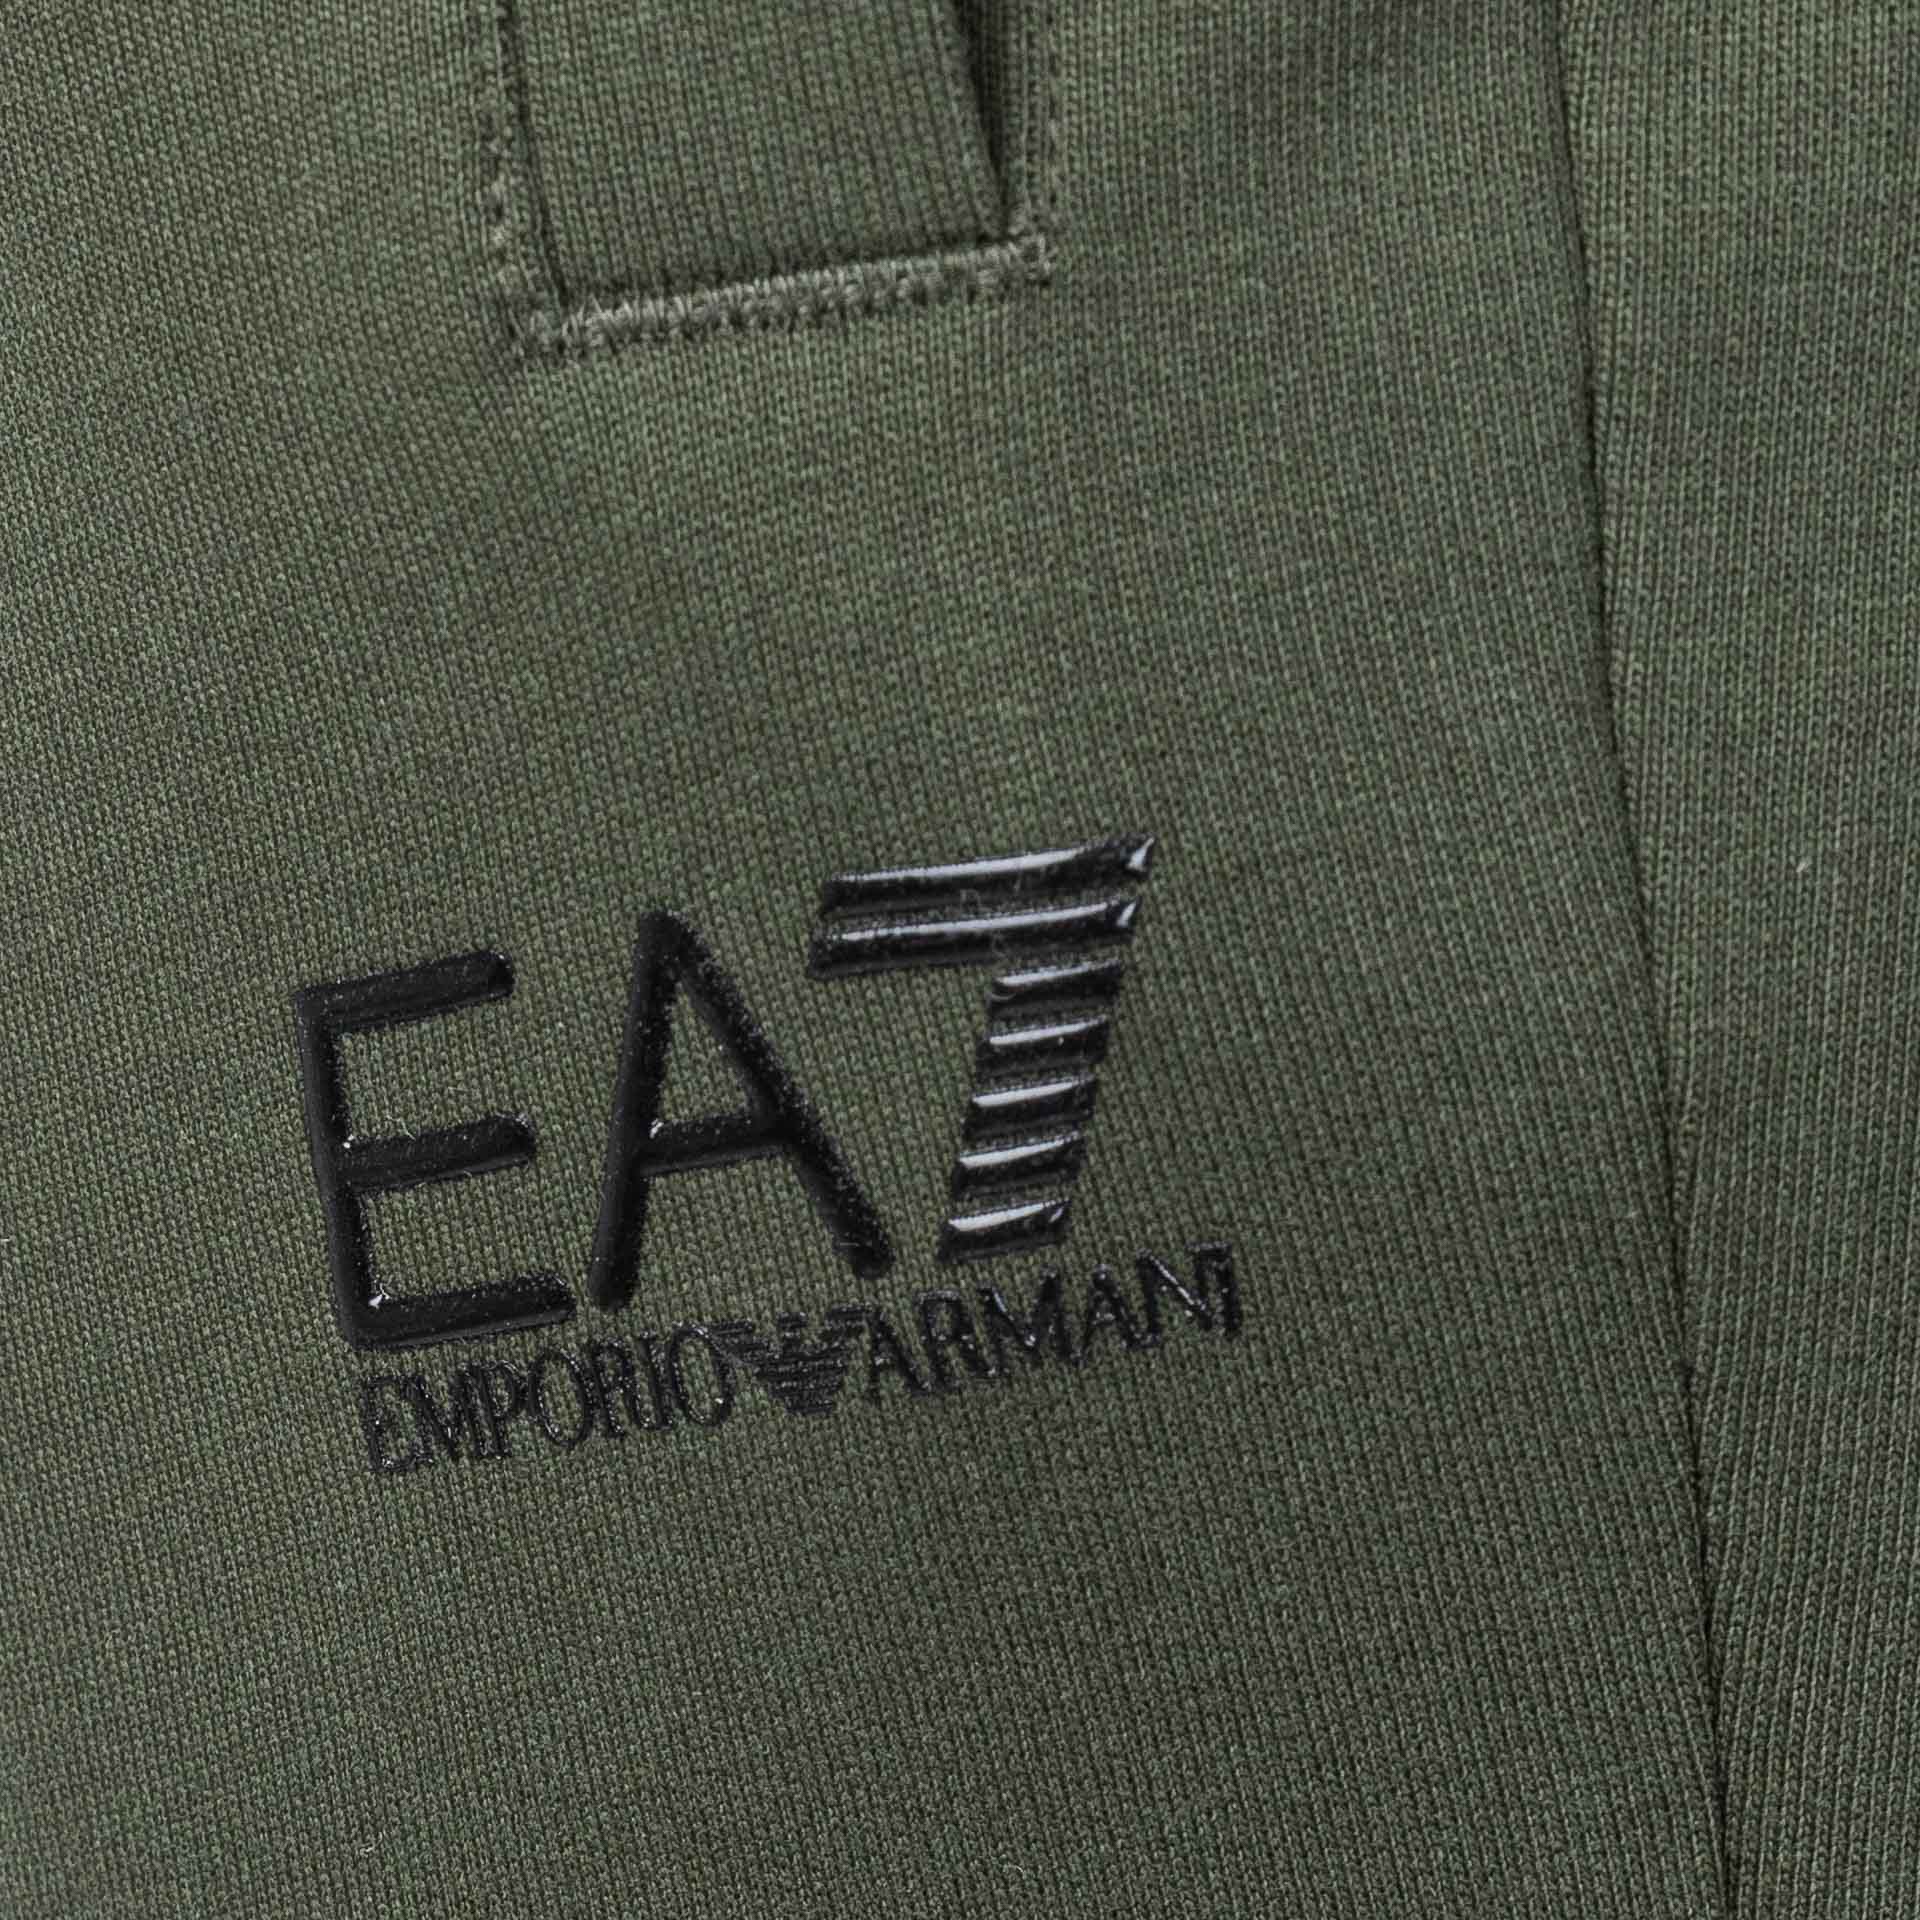 Spodnie dresowe męskie EA7 Emporio Armani